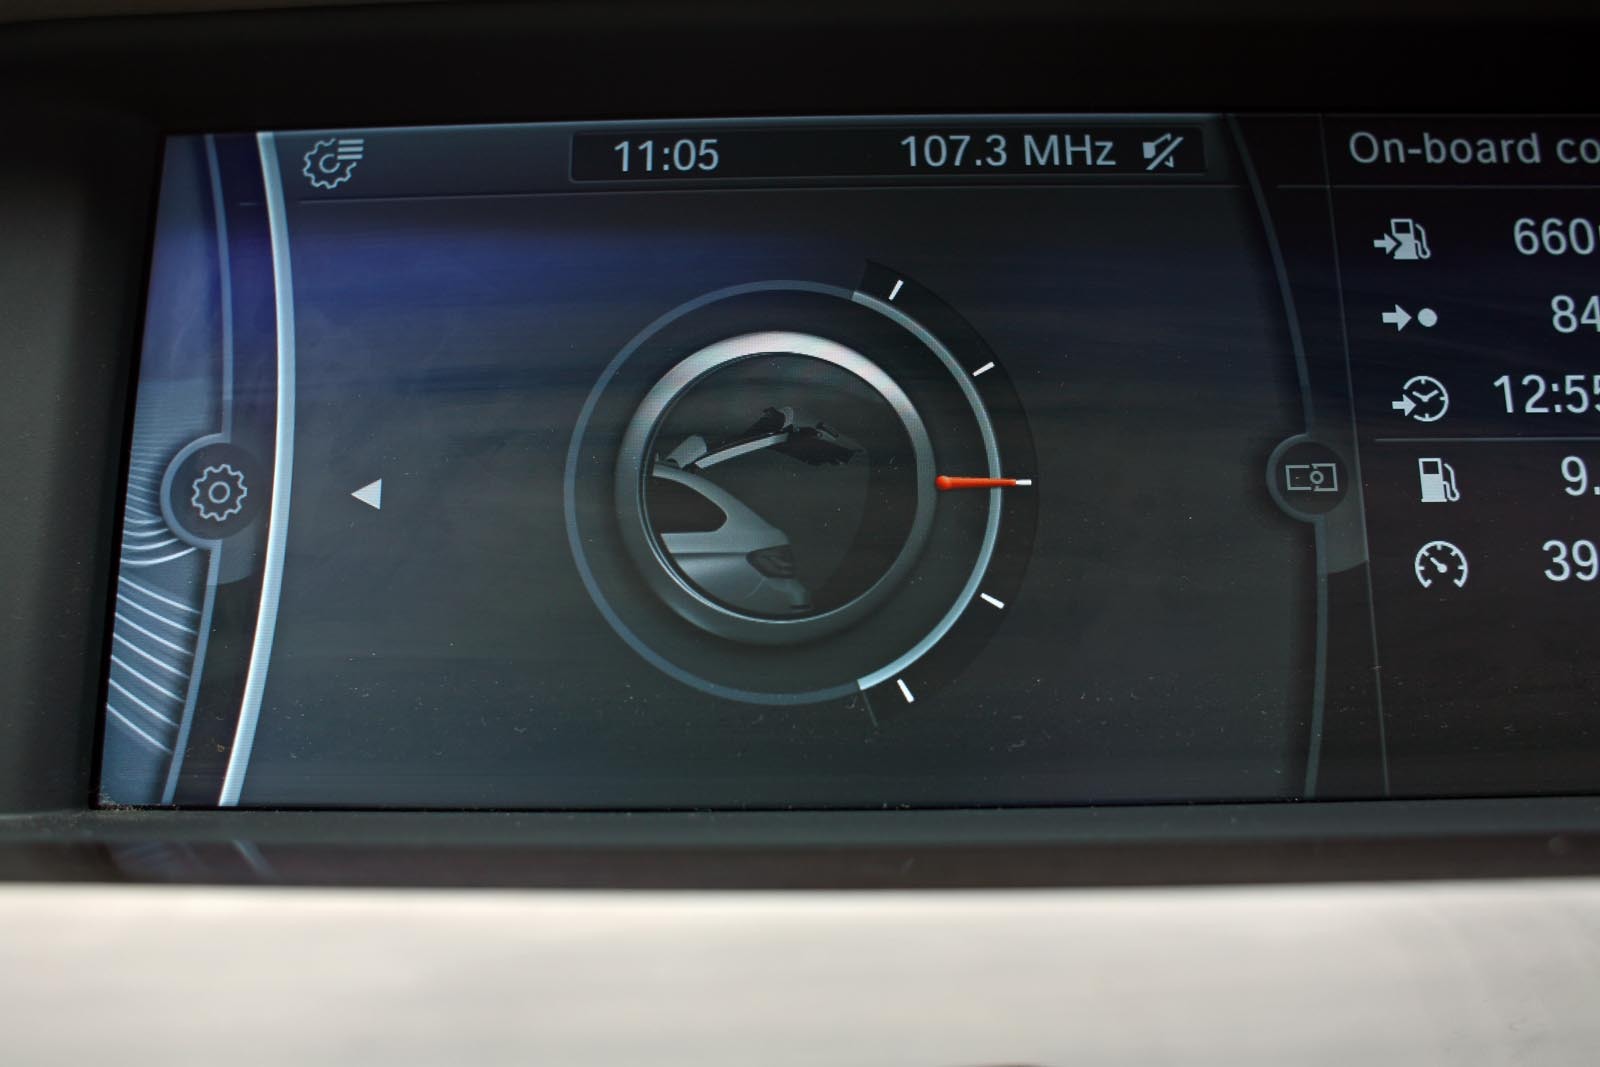 Inaltimea de deschidere a hayonului lui BMW Seria 5 Touring se poate regla din interfata iDrvie